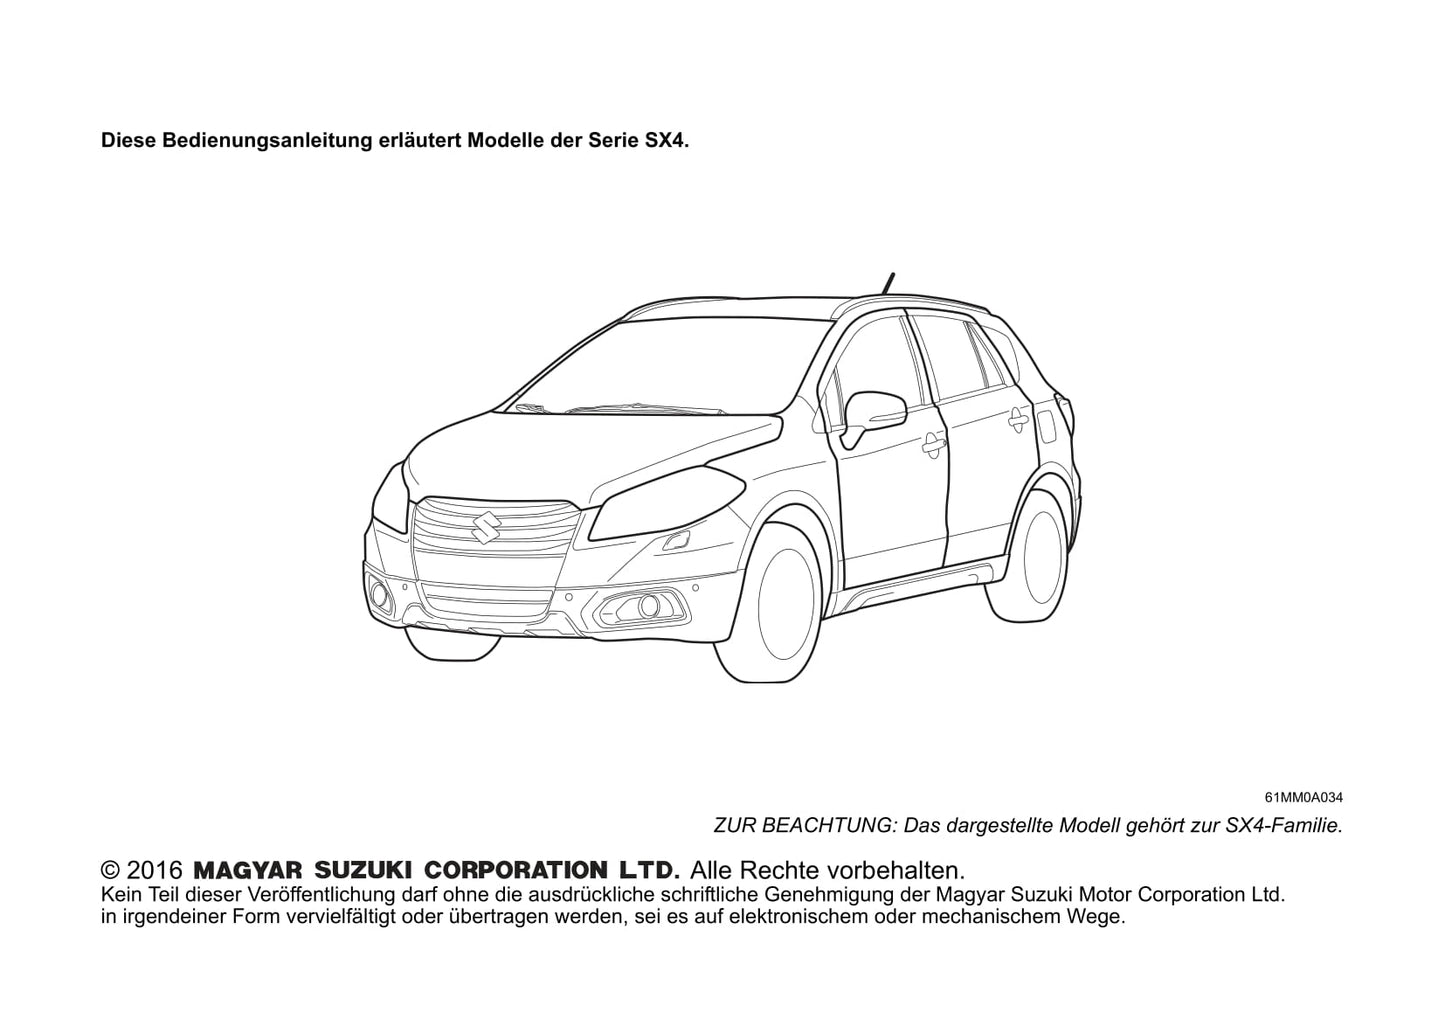 2016-2017 Suzuki SX4 Bedienungsanleitung | Deutsch